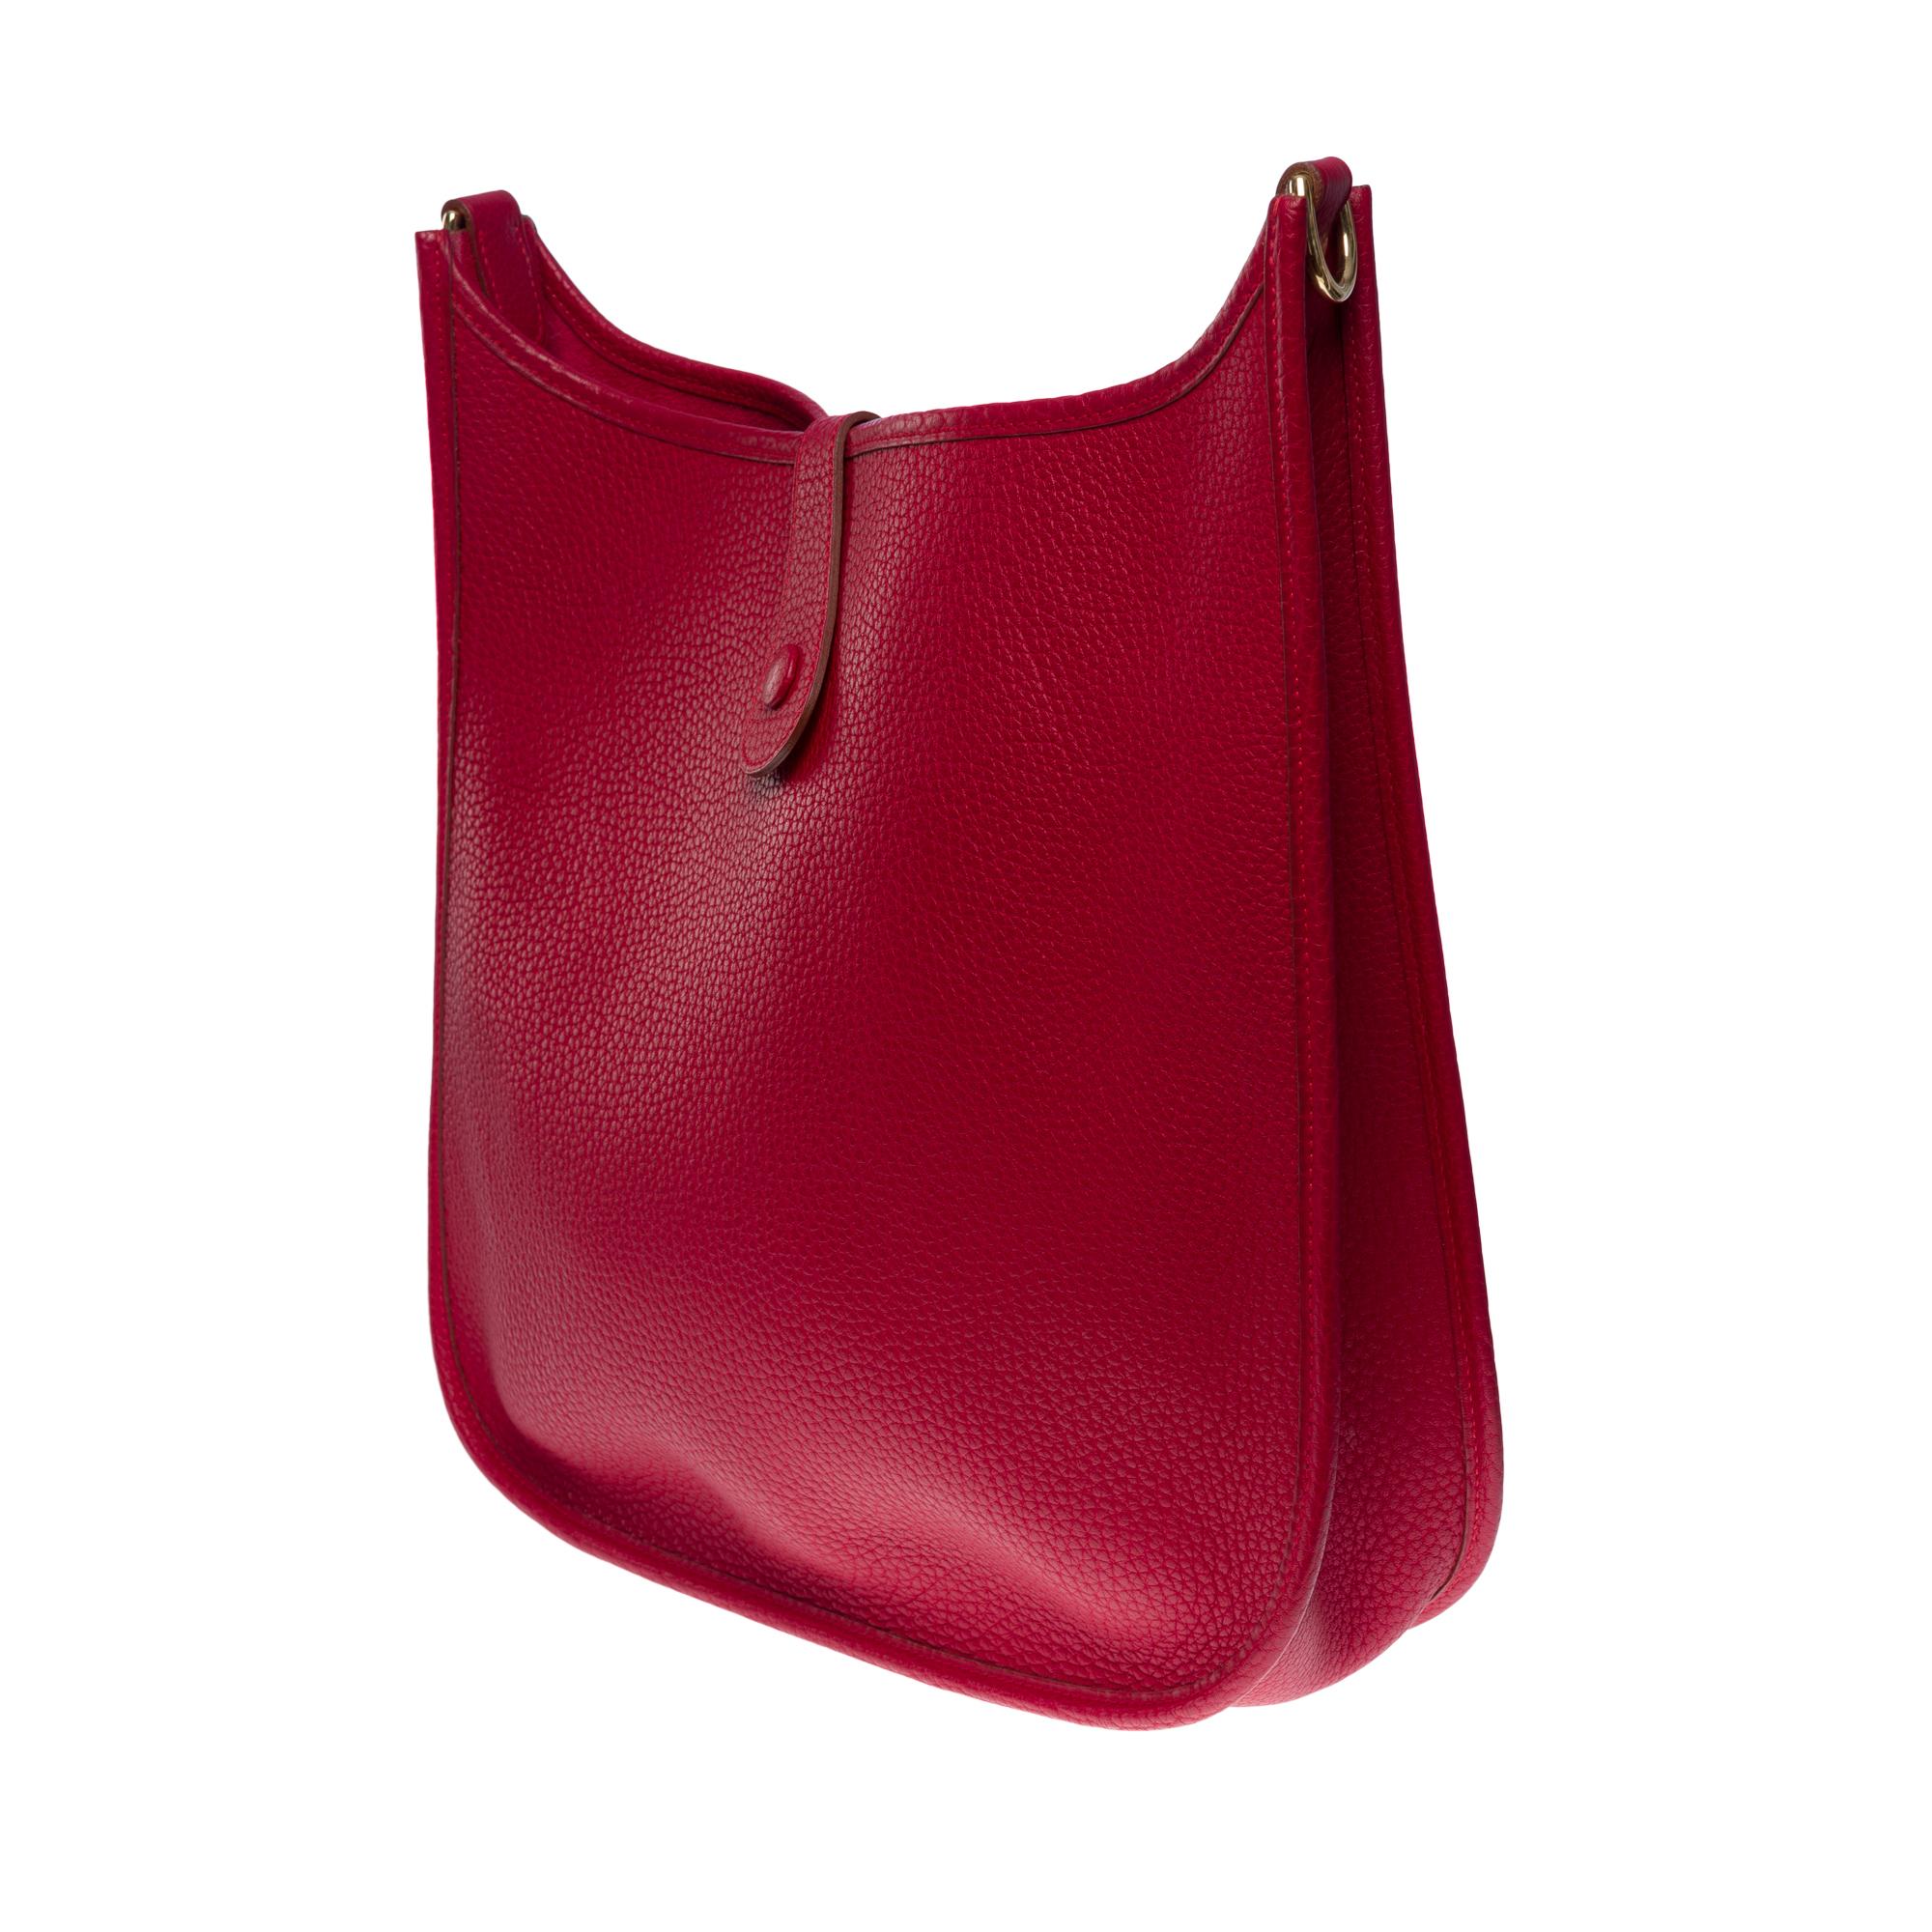 Gorgeous Hermès Evelyne 33 (GM)  shoulder bag in Red Casaque Togo leather, GHW For Sale 2